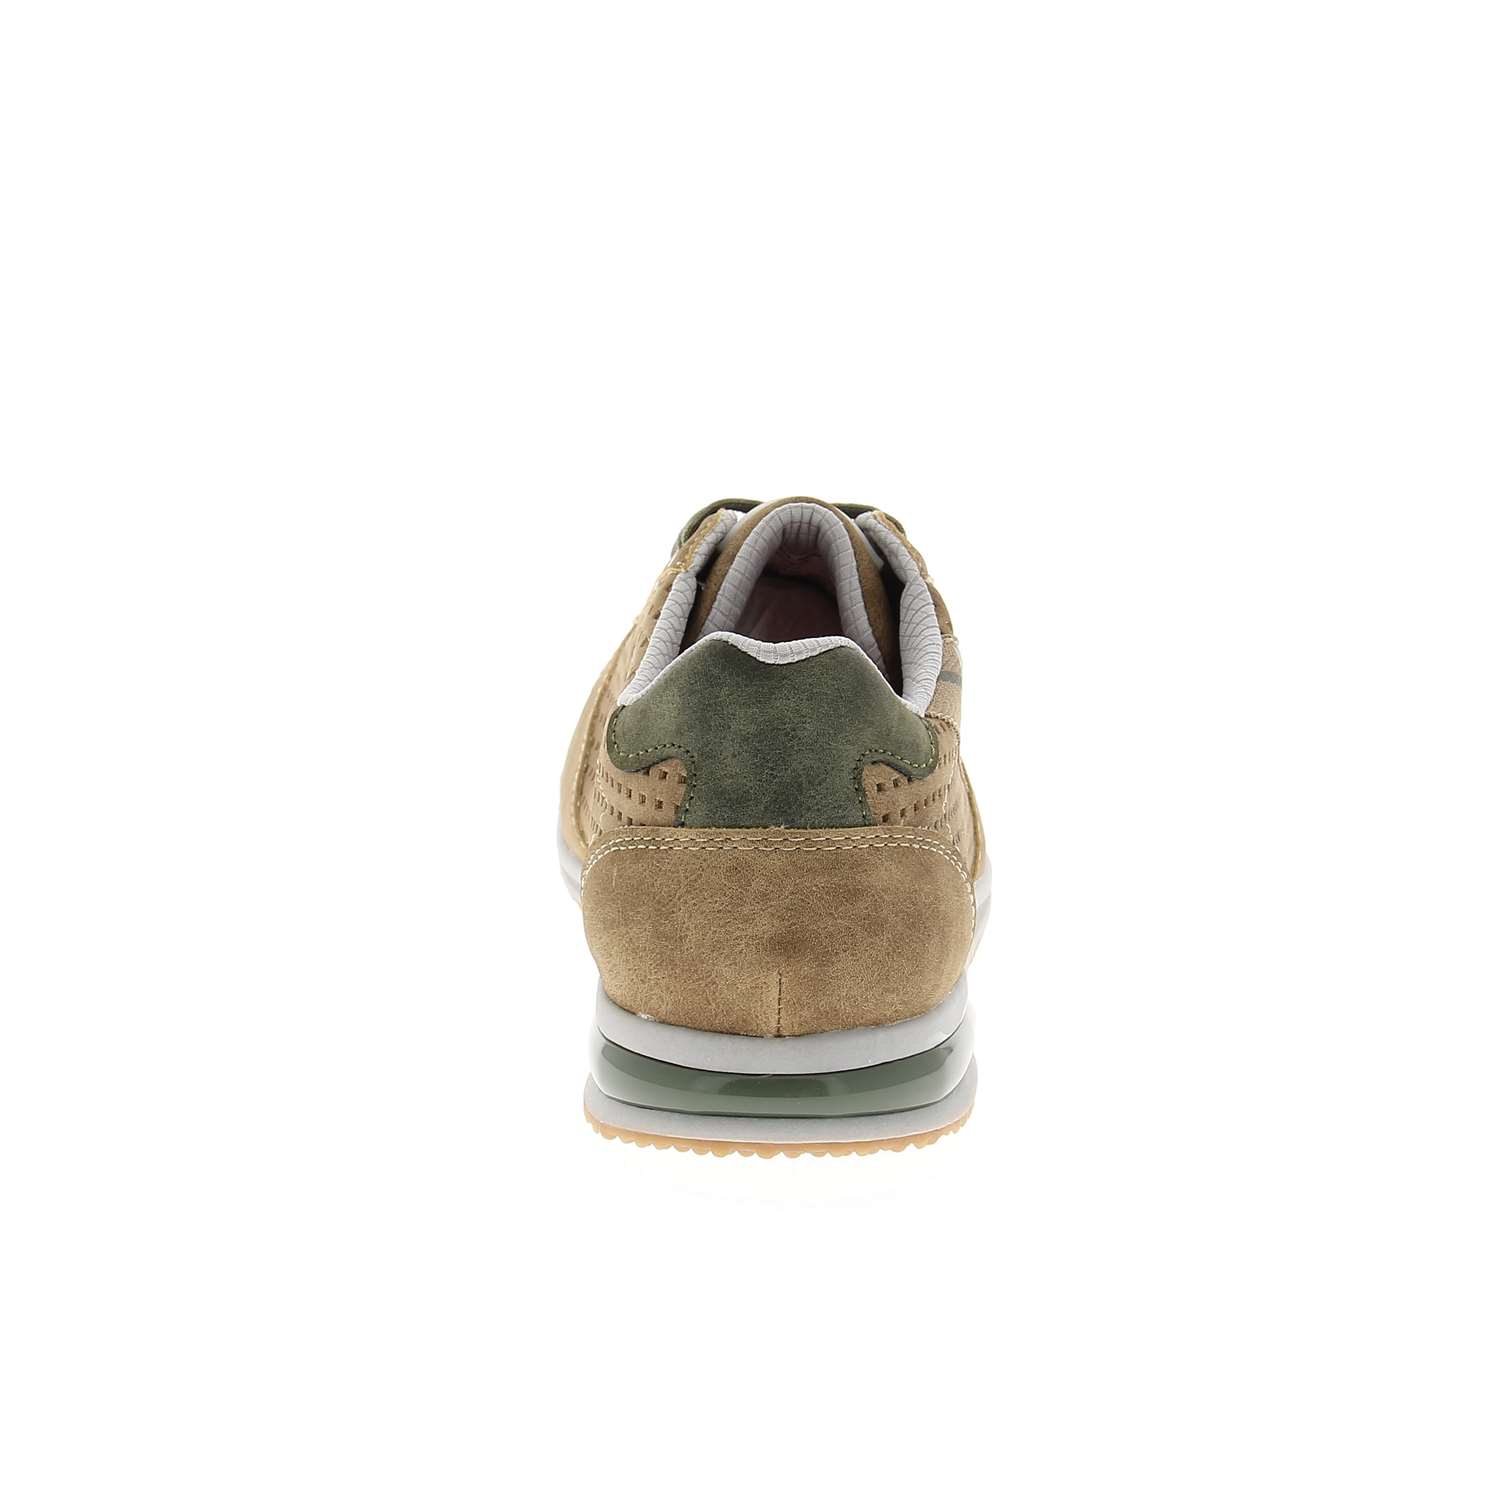 04 - BULO - BUGATTI - Chaussures à lacets - Croûte de cuir